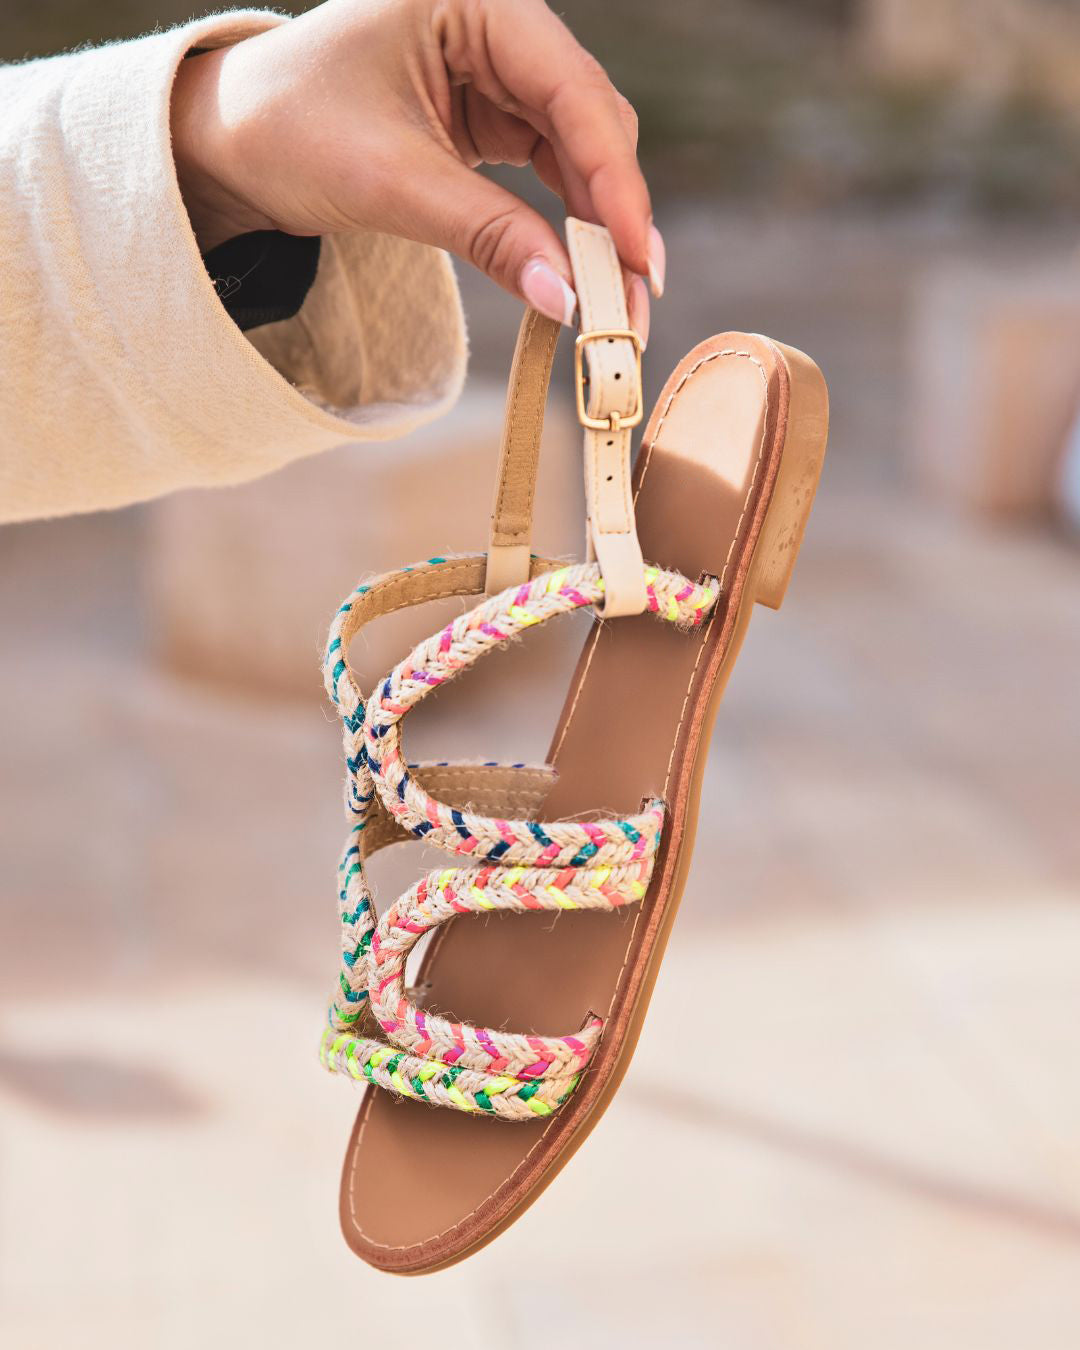 Sandale femme plate multicolore bohème - Audrey - Casualmode.fr